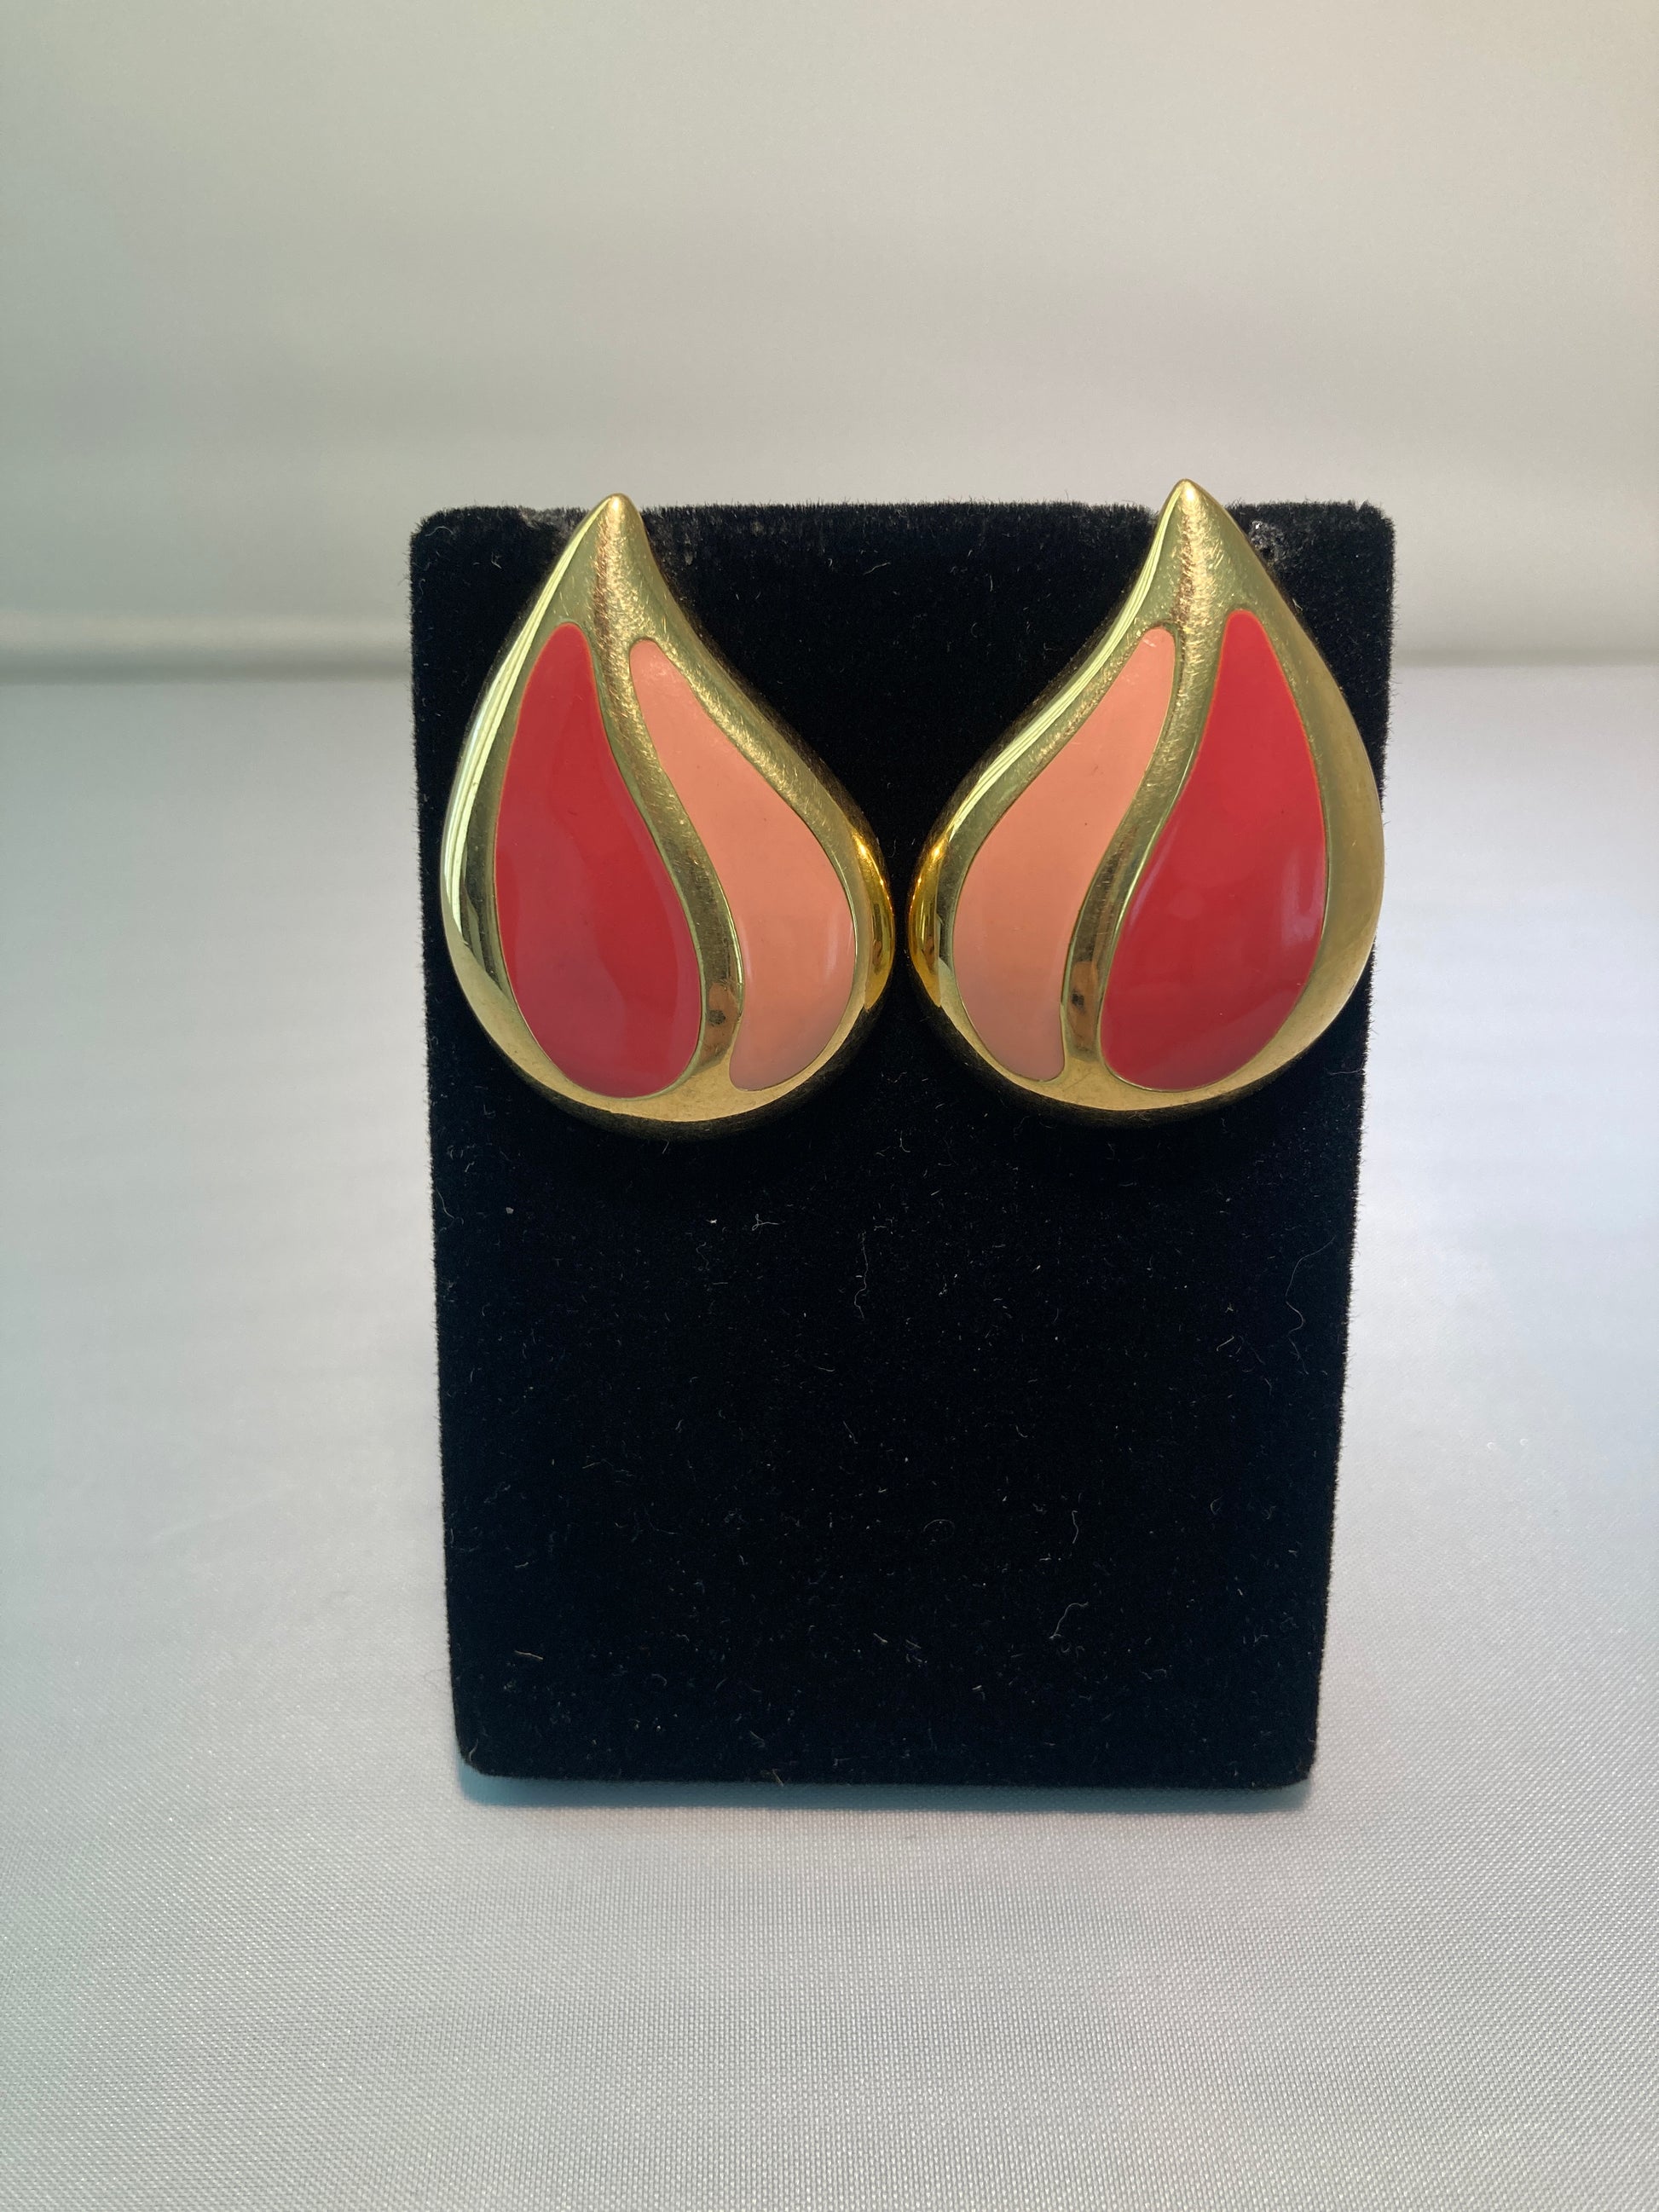 Goldtone Enamel Teardrop Earrings by Napier in Mauve and Peach